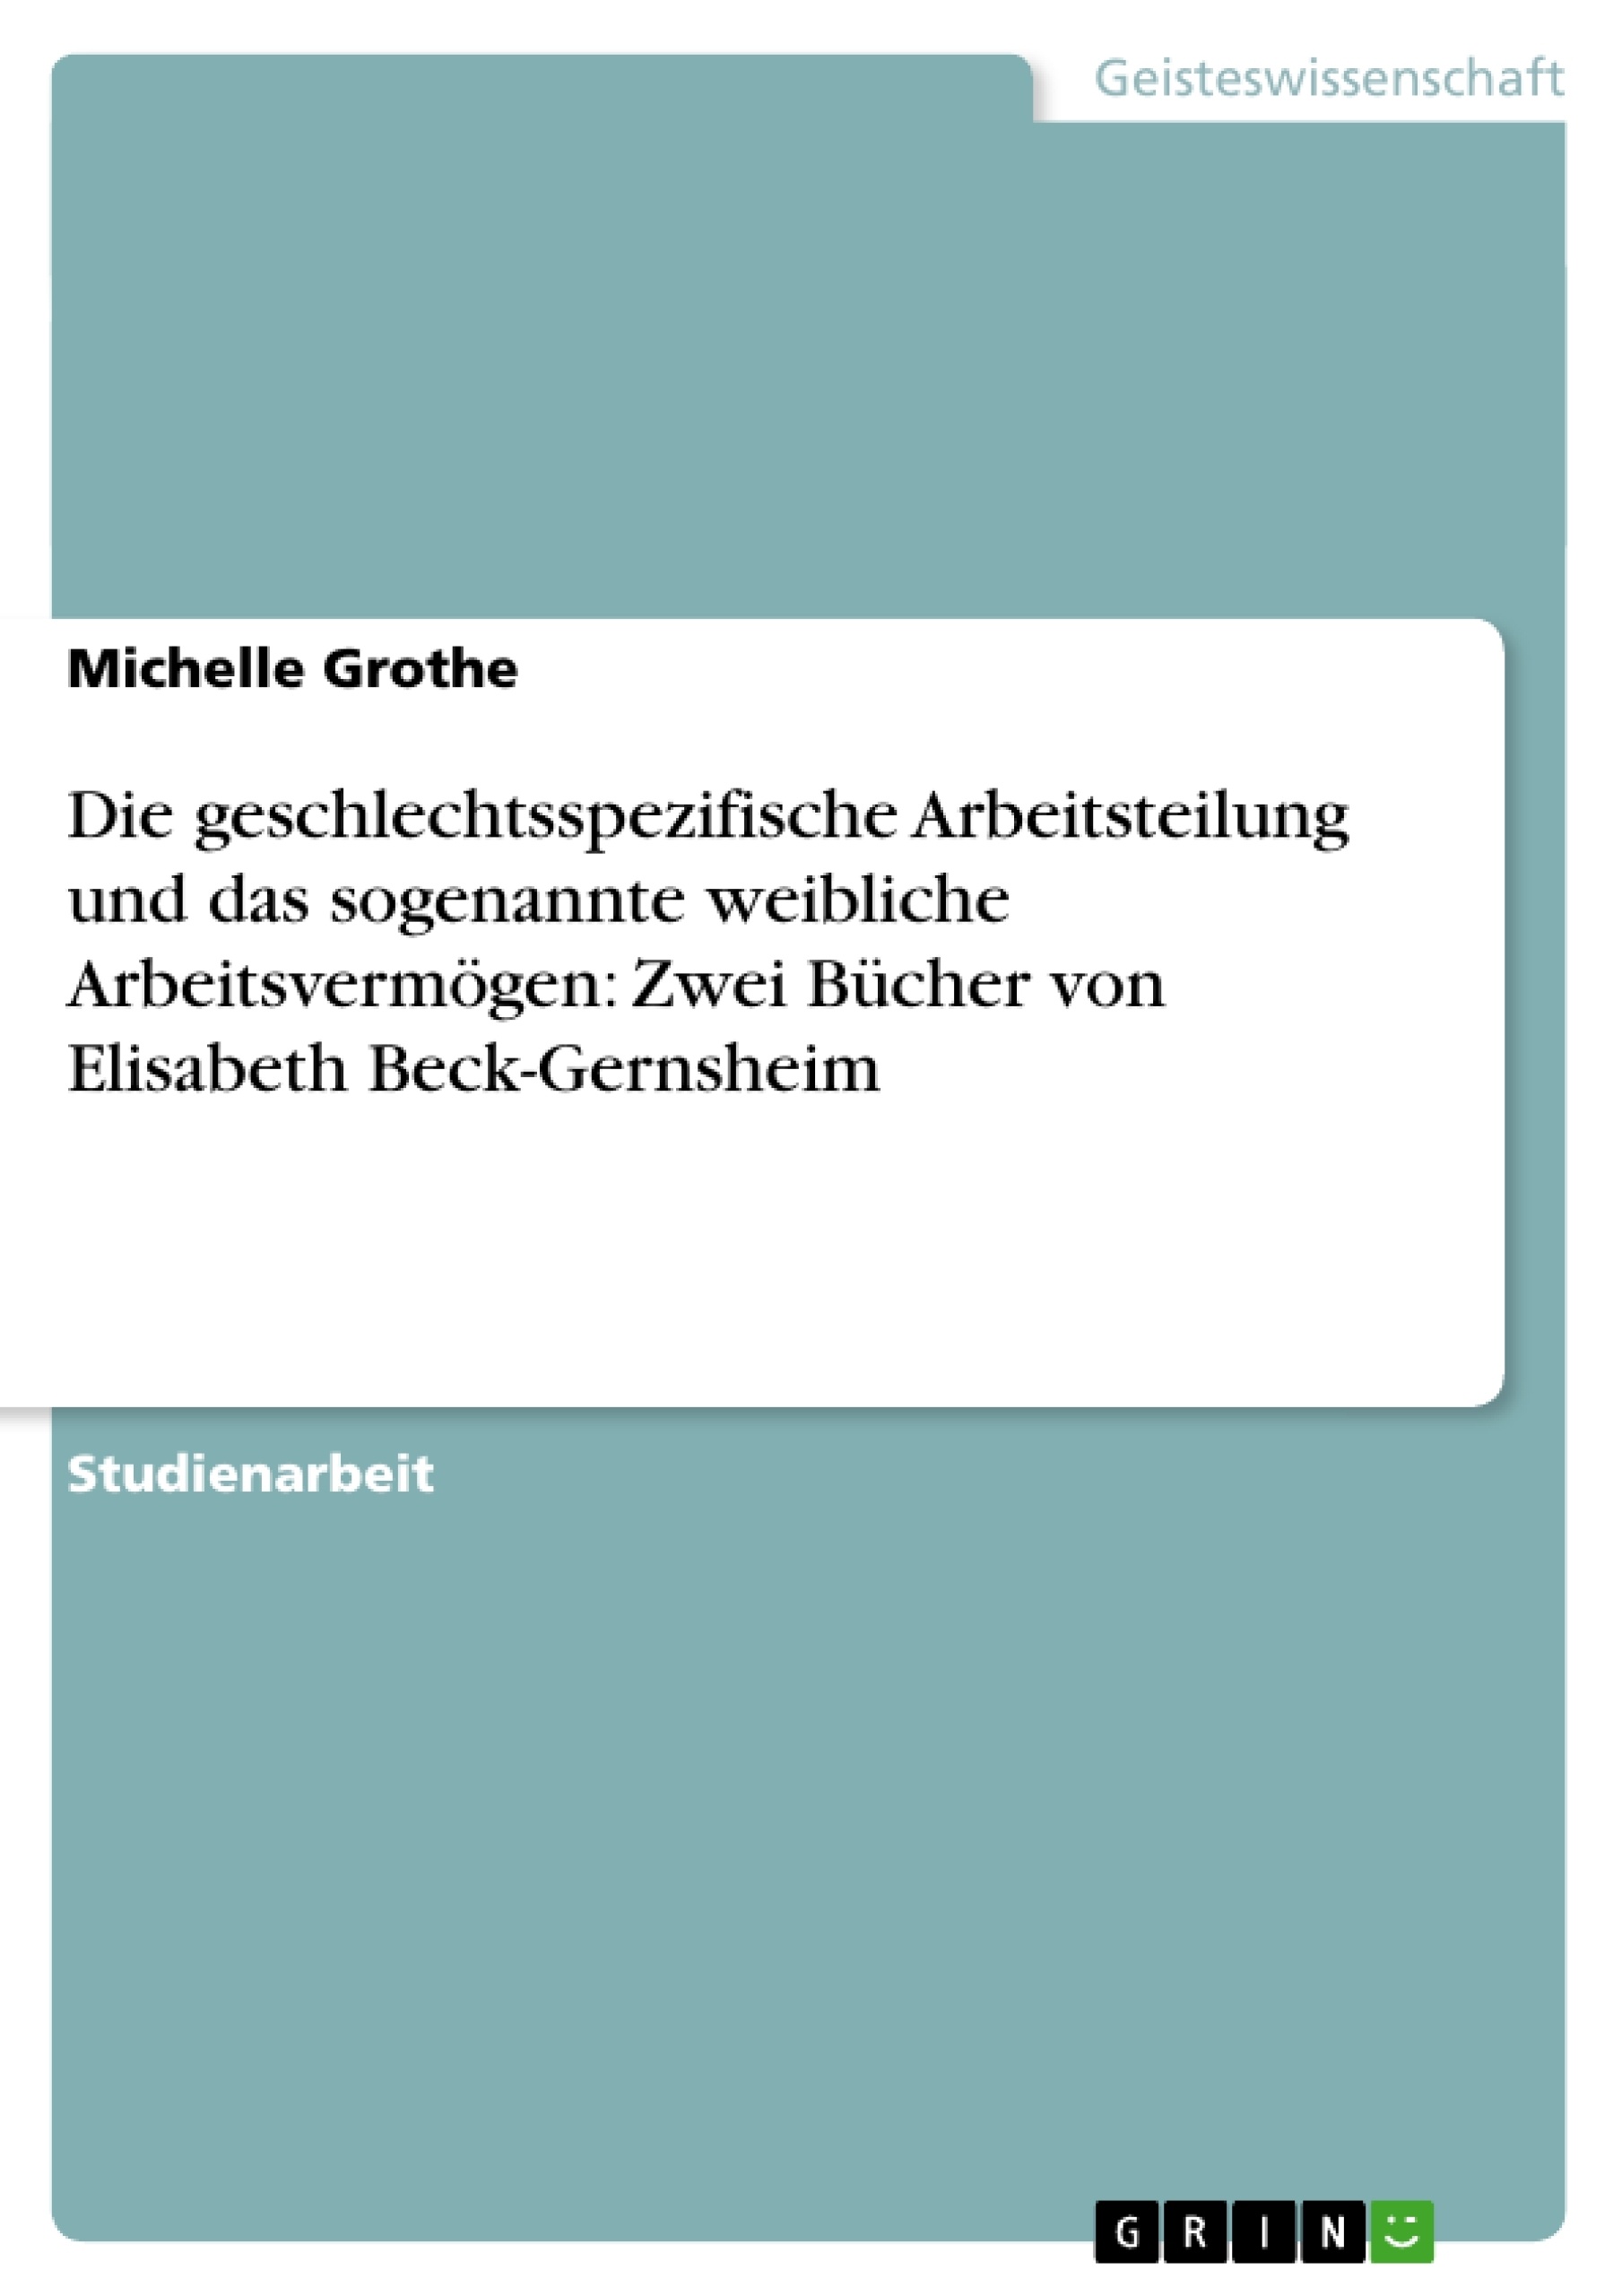 Title: Die geschlechtsspezifische Arbeitsteilung und das sogenannte weibliche Arbeitsvermögen: Zwei Bücher von Elisabeth Beck-Gernsheim